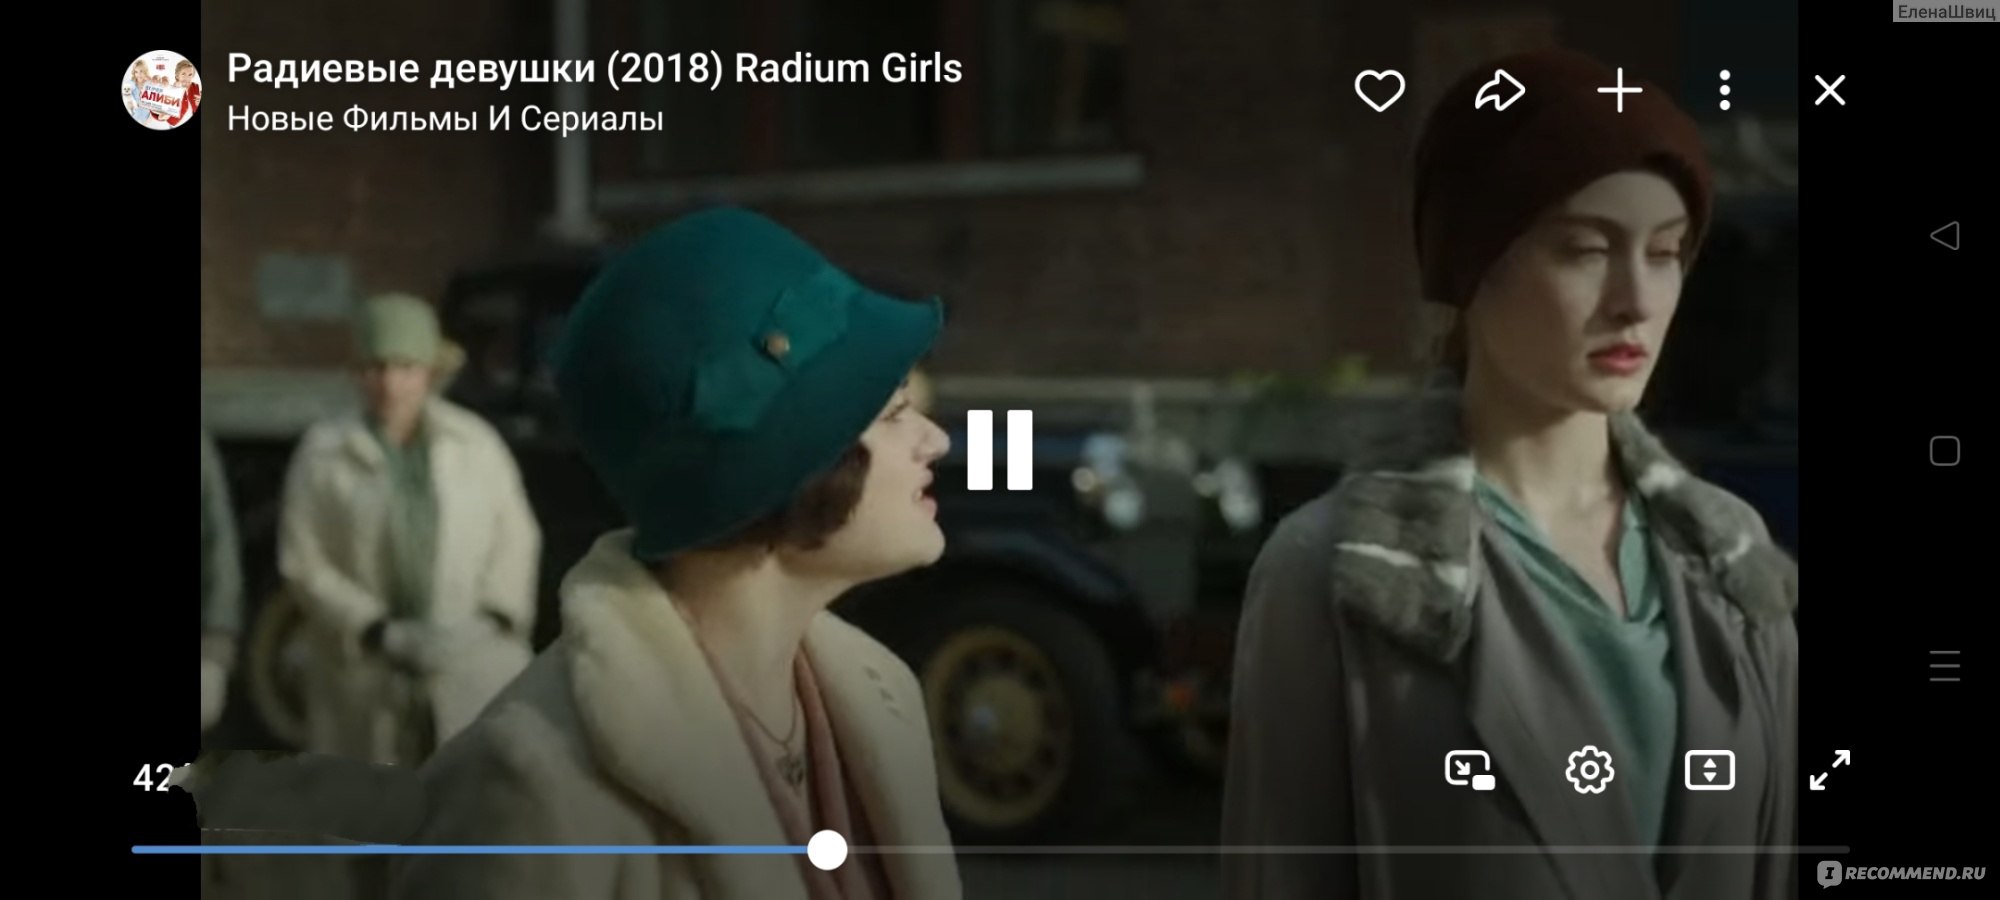 Радиевые девушки/Radium Girls (2018, фильм) фото